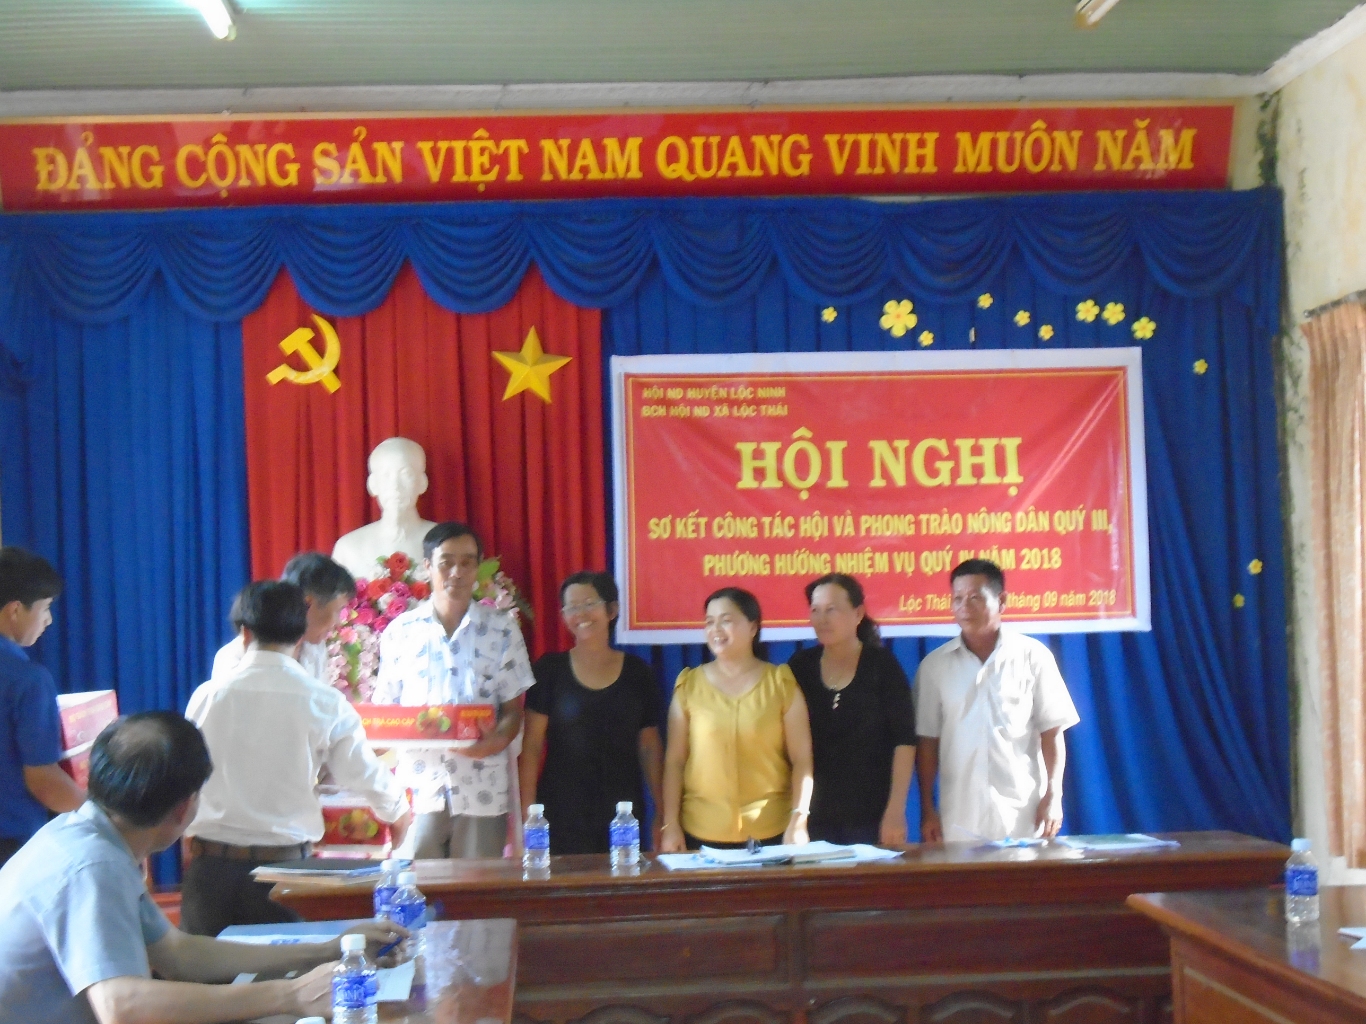 Hội Nông dân xã Lộc Thái tổ chức Hội nghị  sơ kết công tác Hội và phong trào nông dân quý III năm 2018